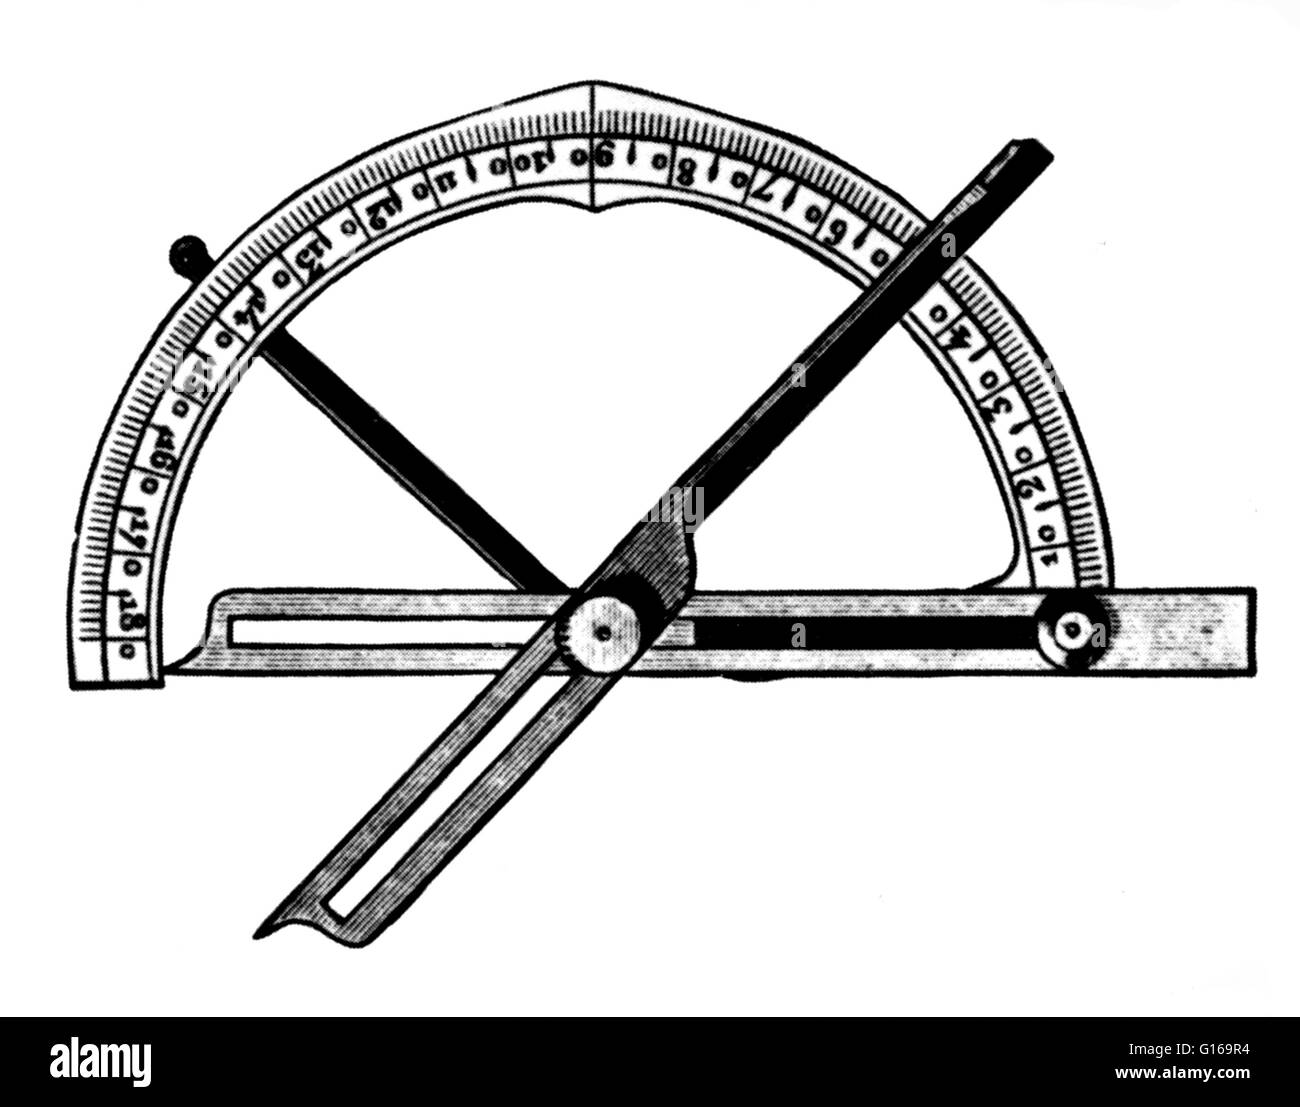 Ein Goniometer ist ein Instrument, das entweder einen Winkel misst oder ermöglicht es einem Objekt um eine genaue Winkelposition gedreht werden. Der Begriff Goniometry leitet sich aus zwei griechischen Wörtern, g? Nia, d.h. Winkel und Metron, d. h. Messen. In der Kristallographie, goniom Stockfoto